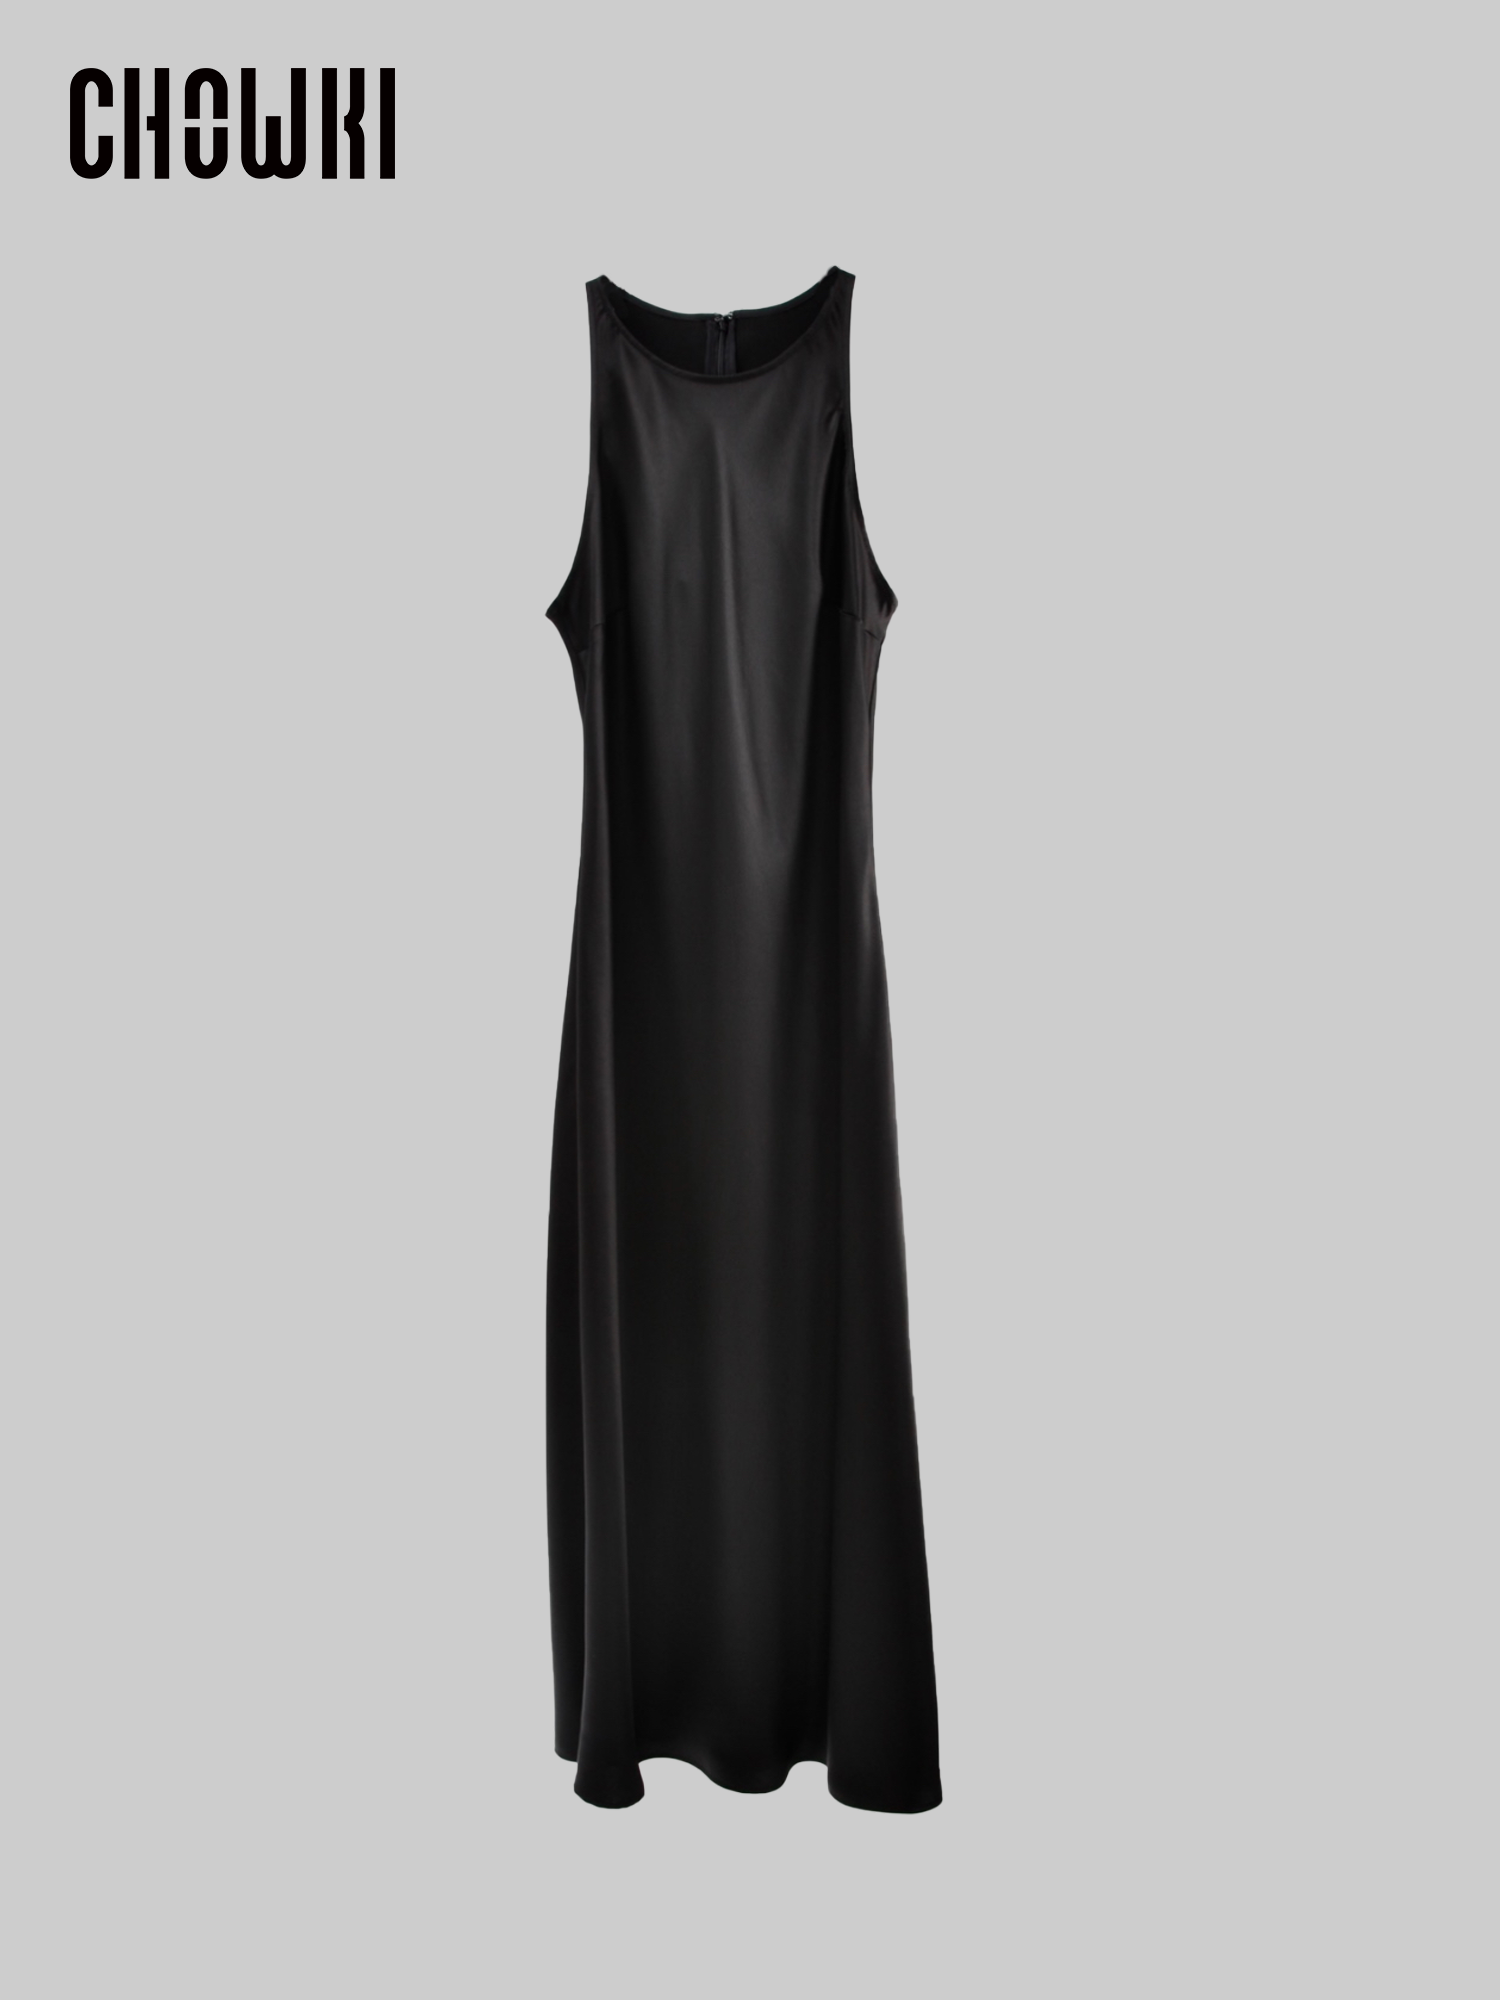 “莱蒂齐亚”王后同款 日本进口三醋酸45修身斜裁典雅气质连衣裙